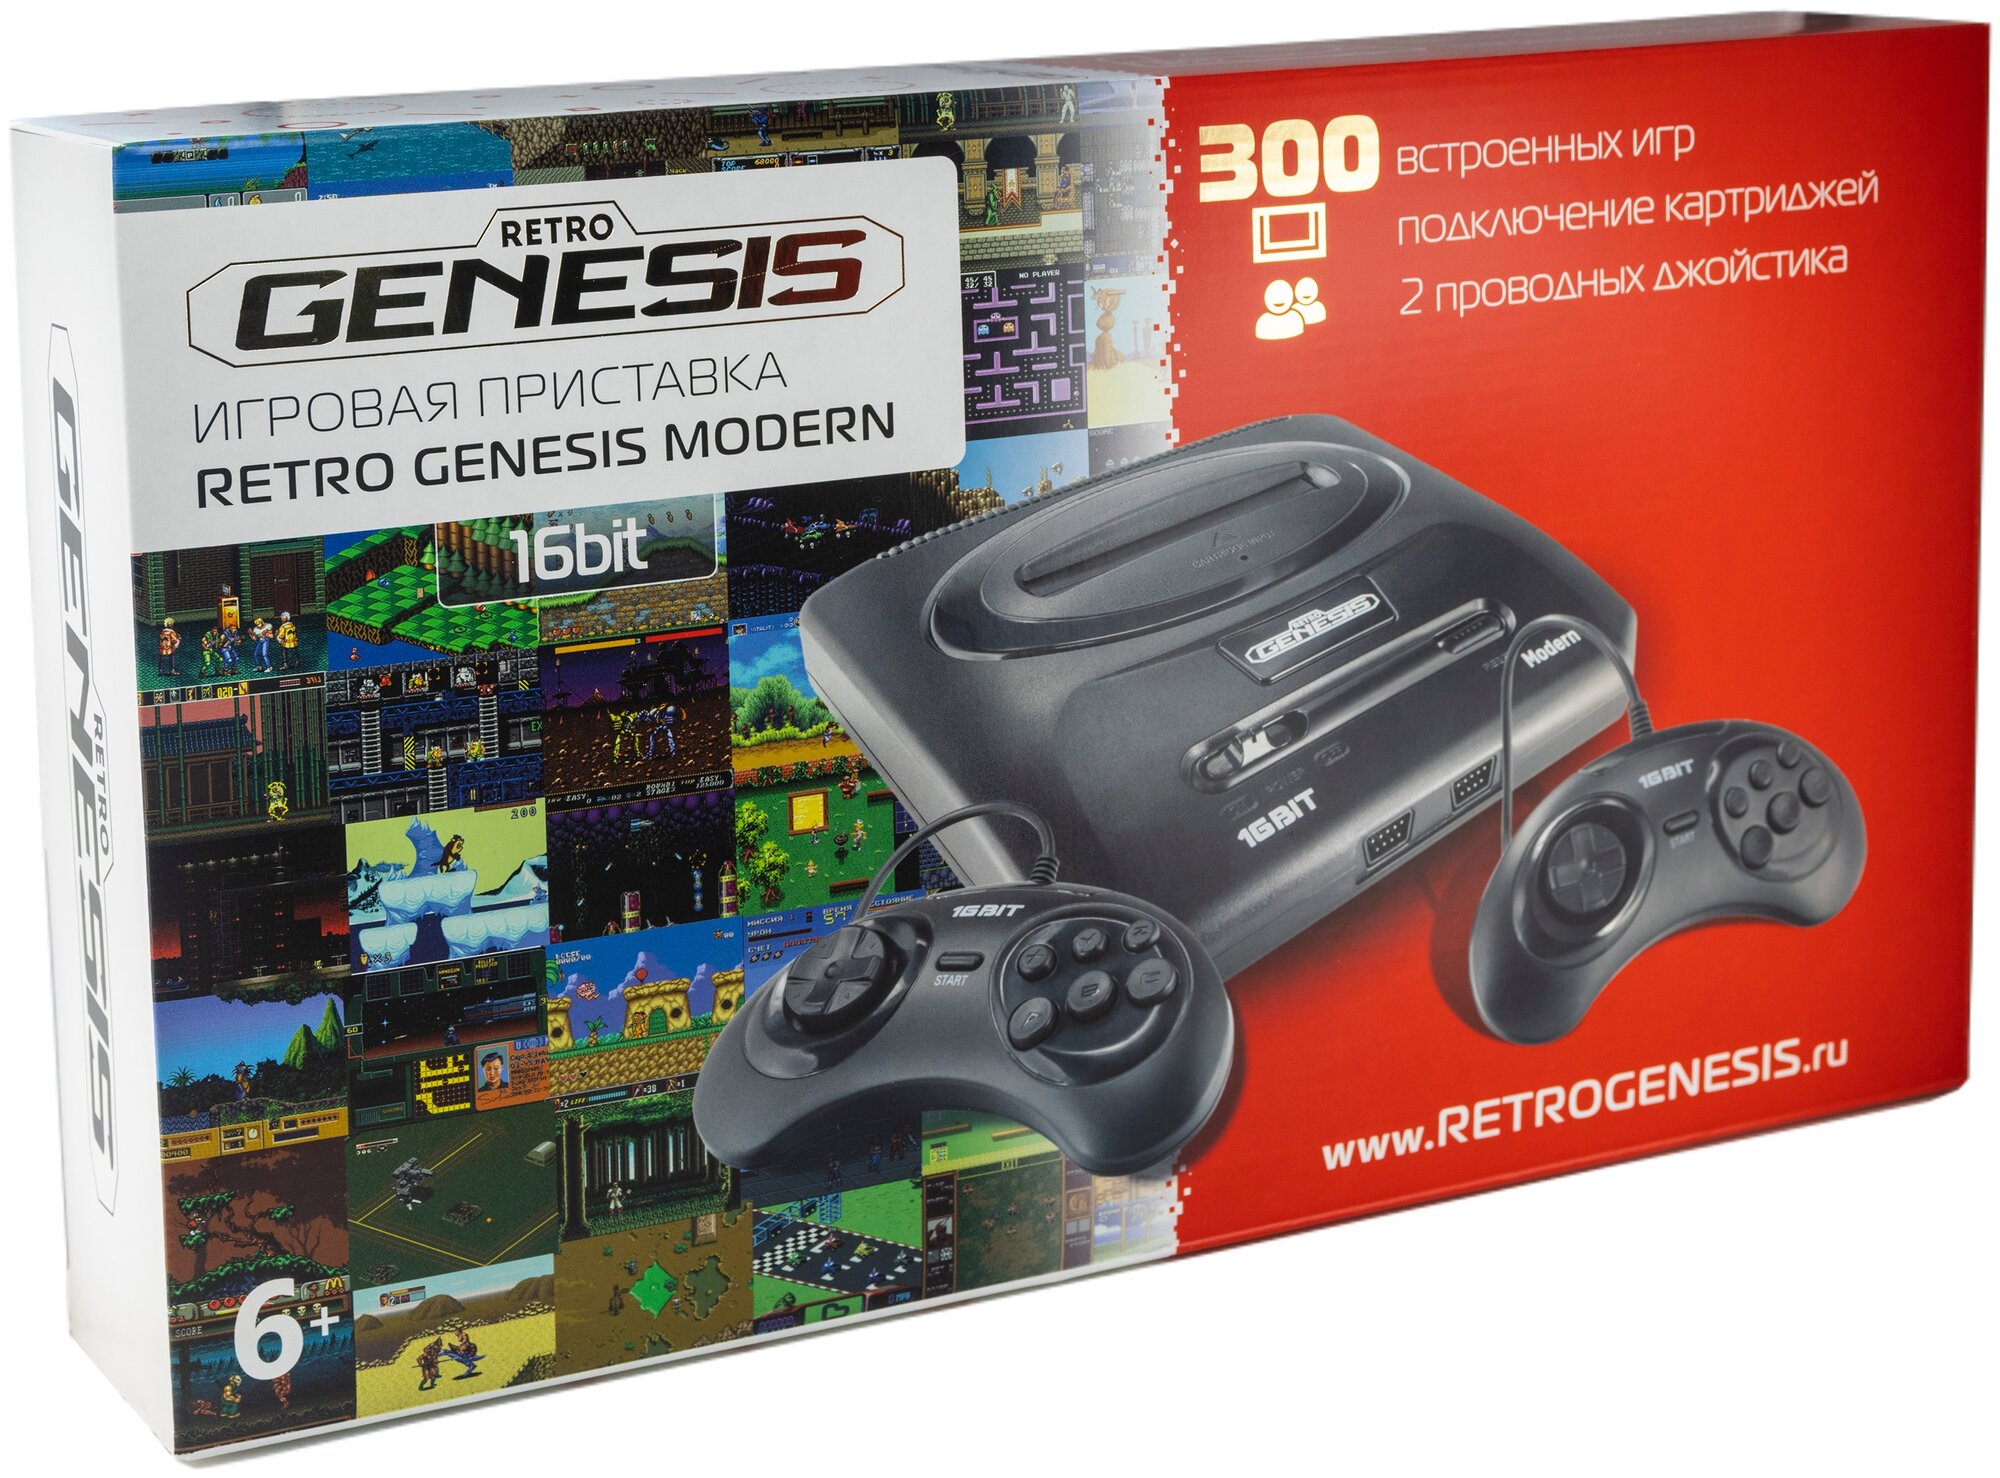 Игровая консоль RETRO GENESIS 300 игр, два проводных джойстика, Modern, черный - фото №2